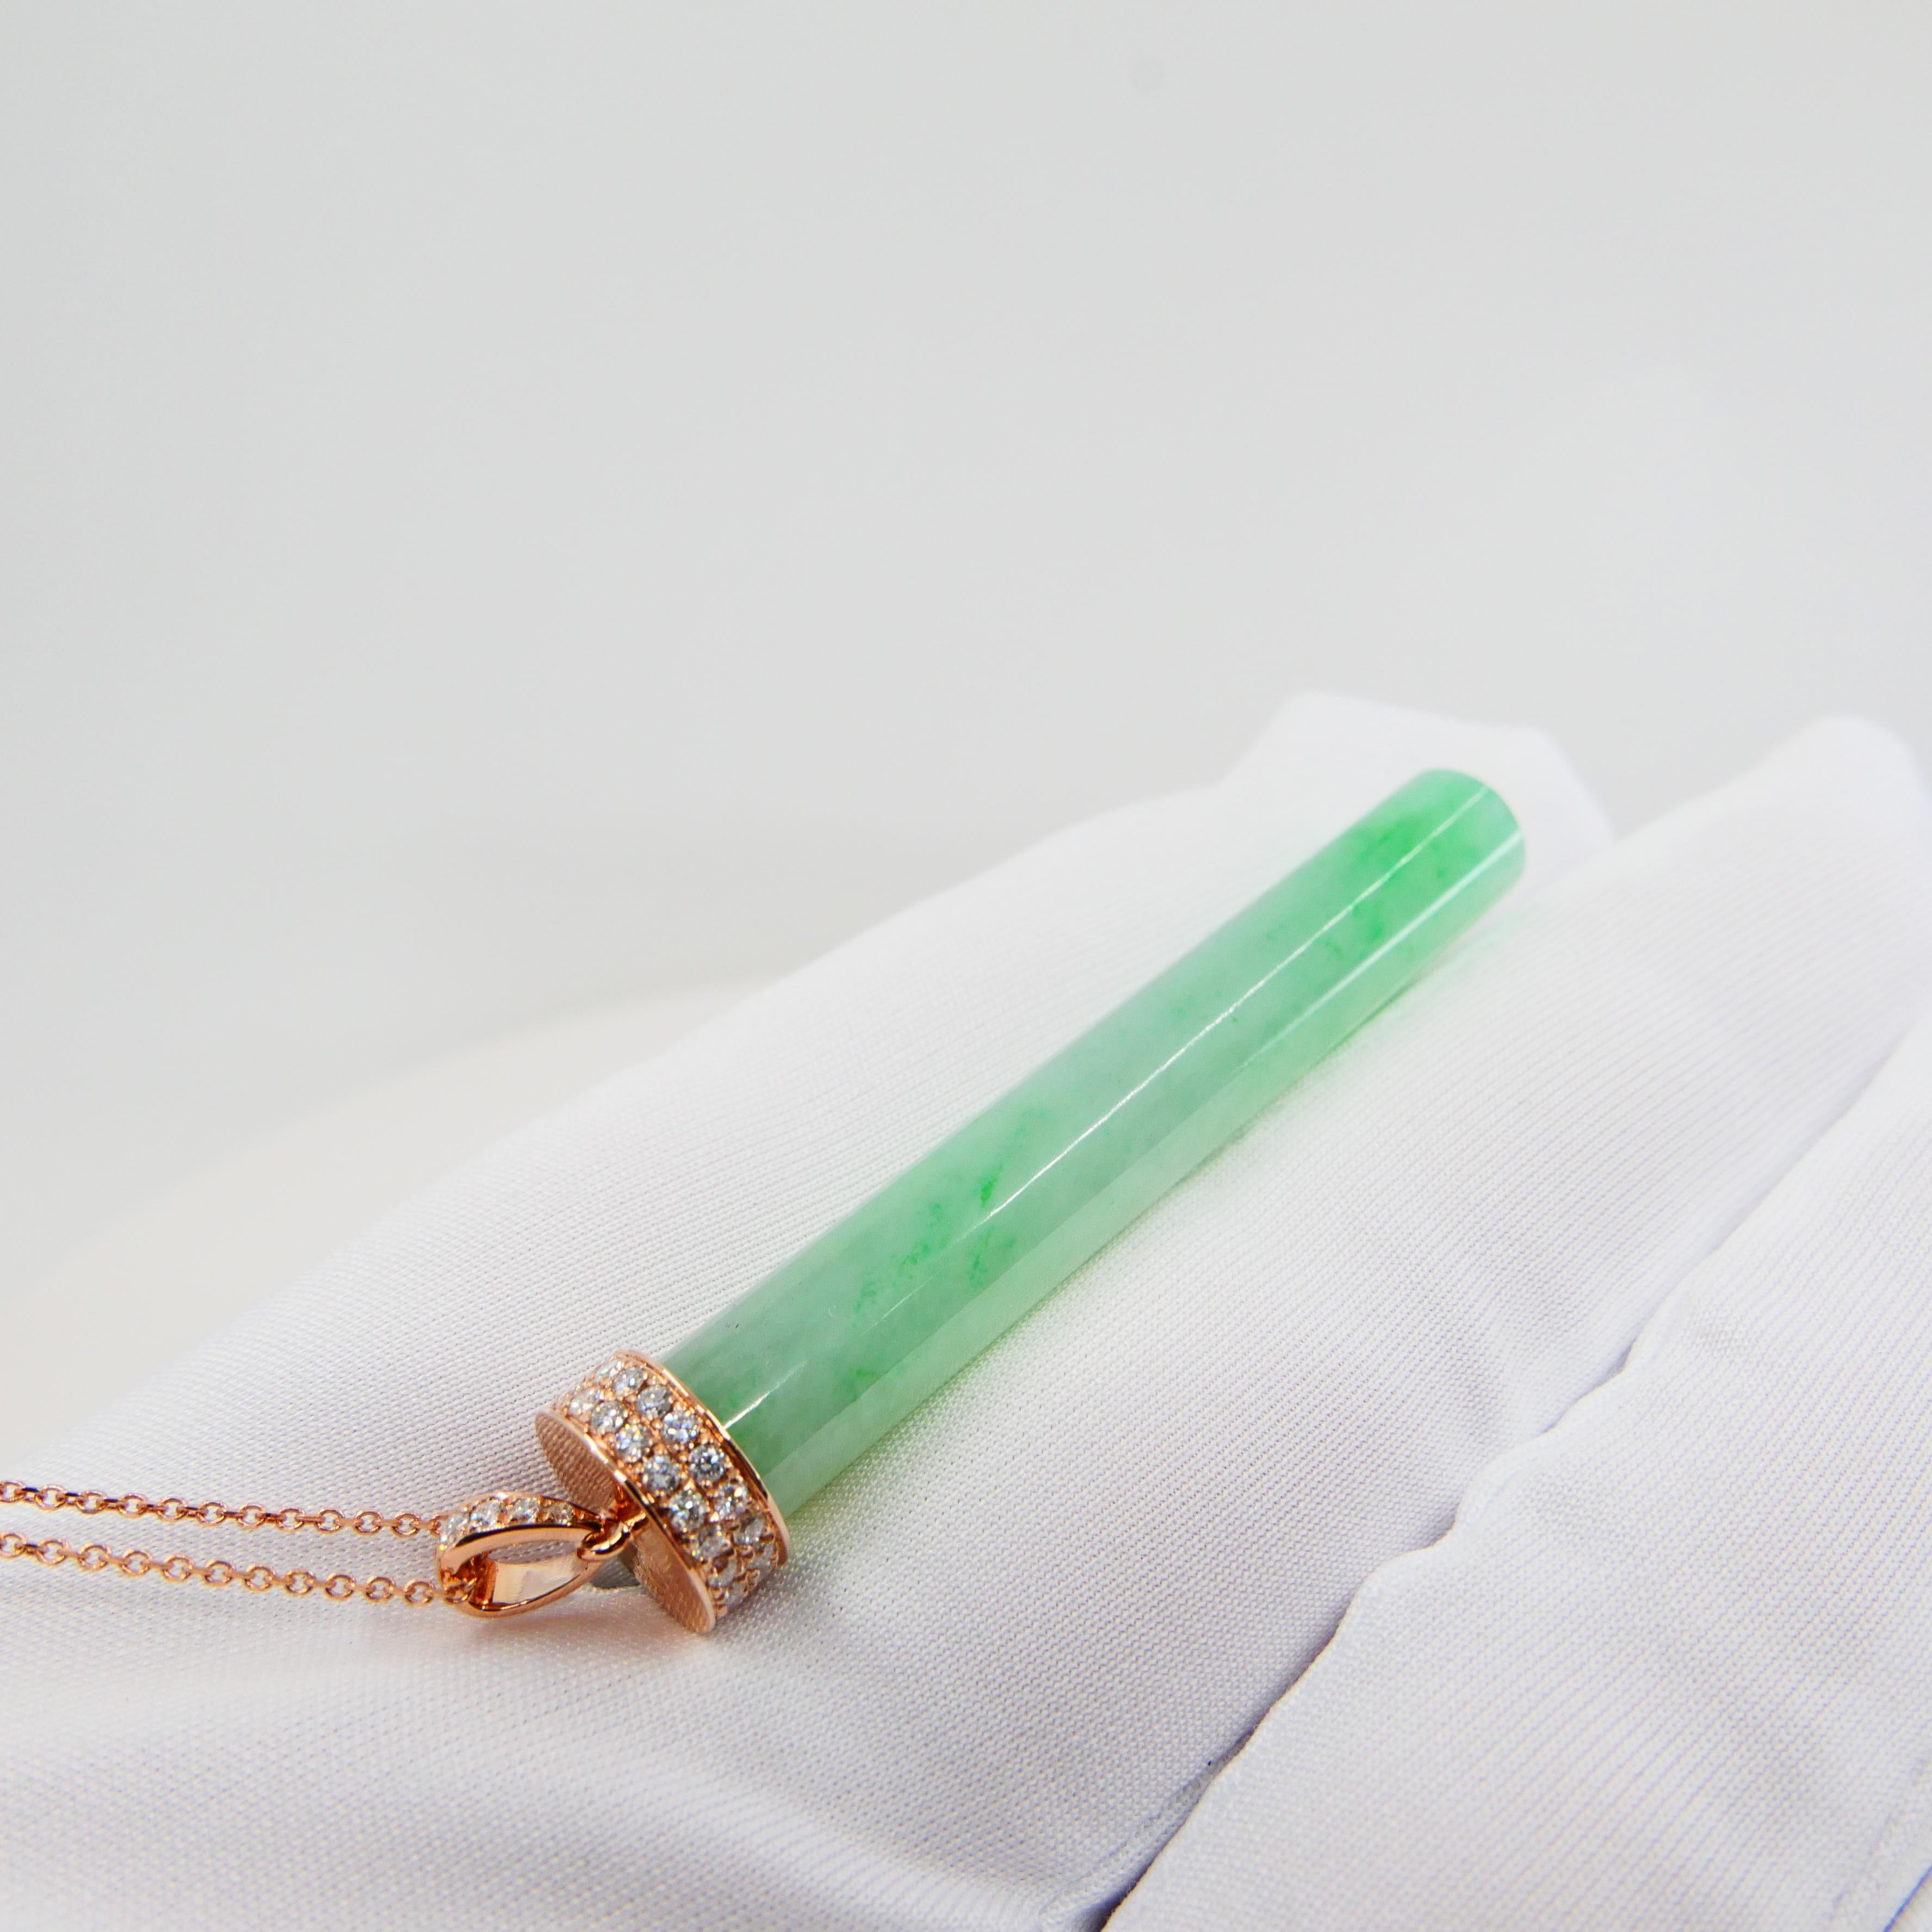 jade necklace pendant